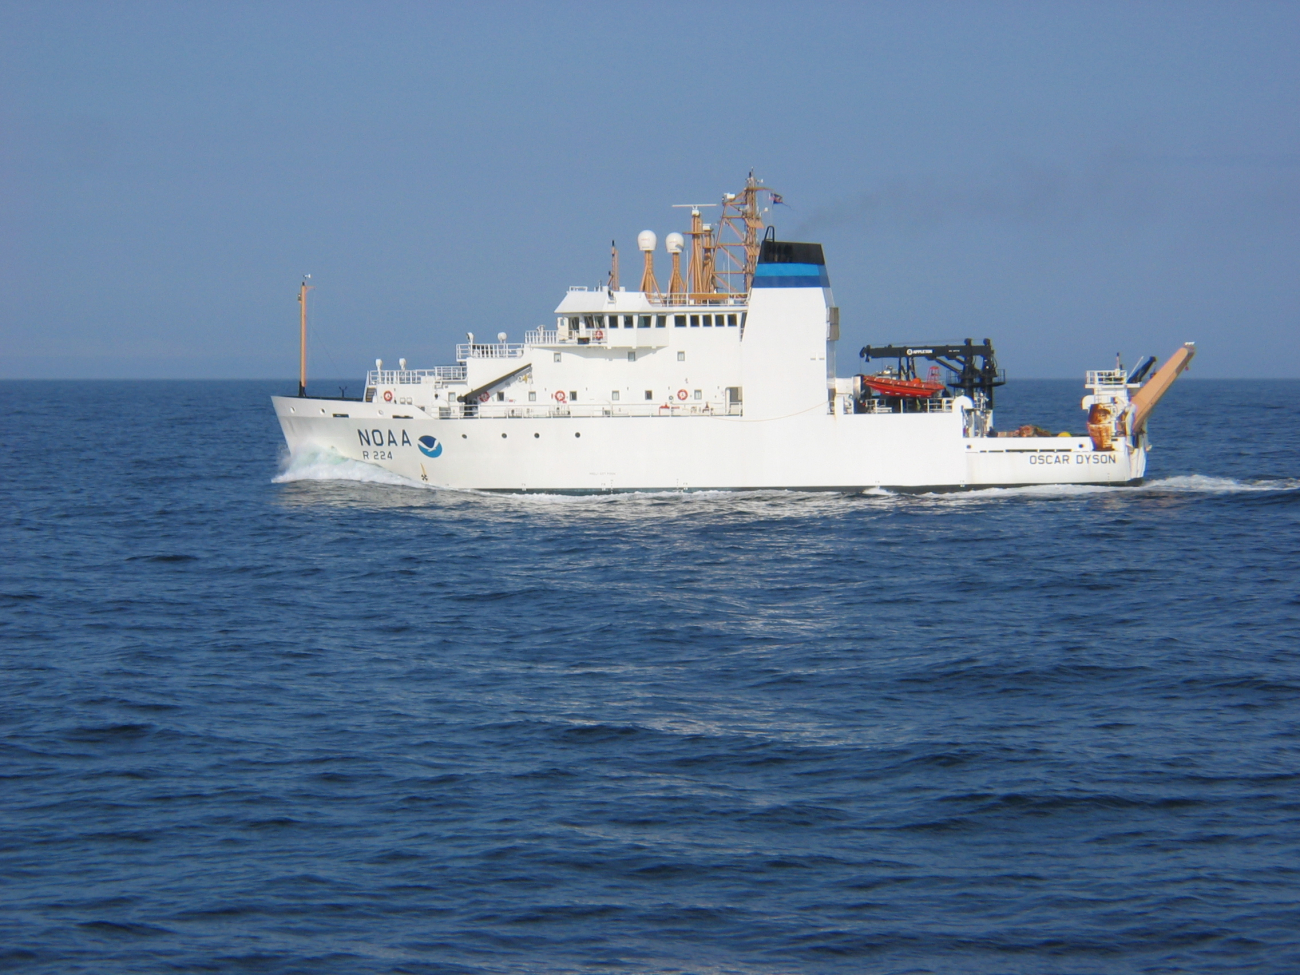 NOAA Ship OSCAR DYSON